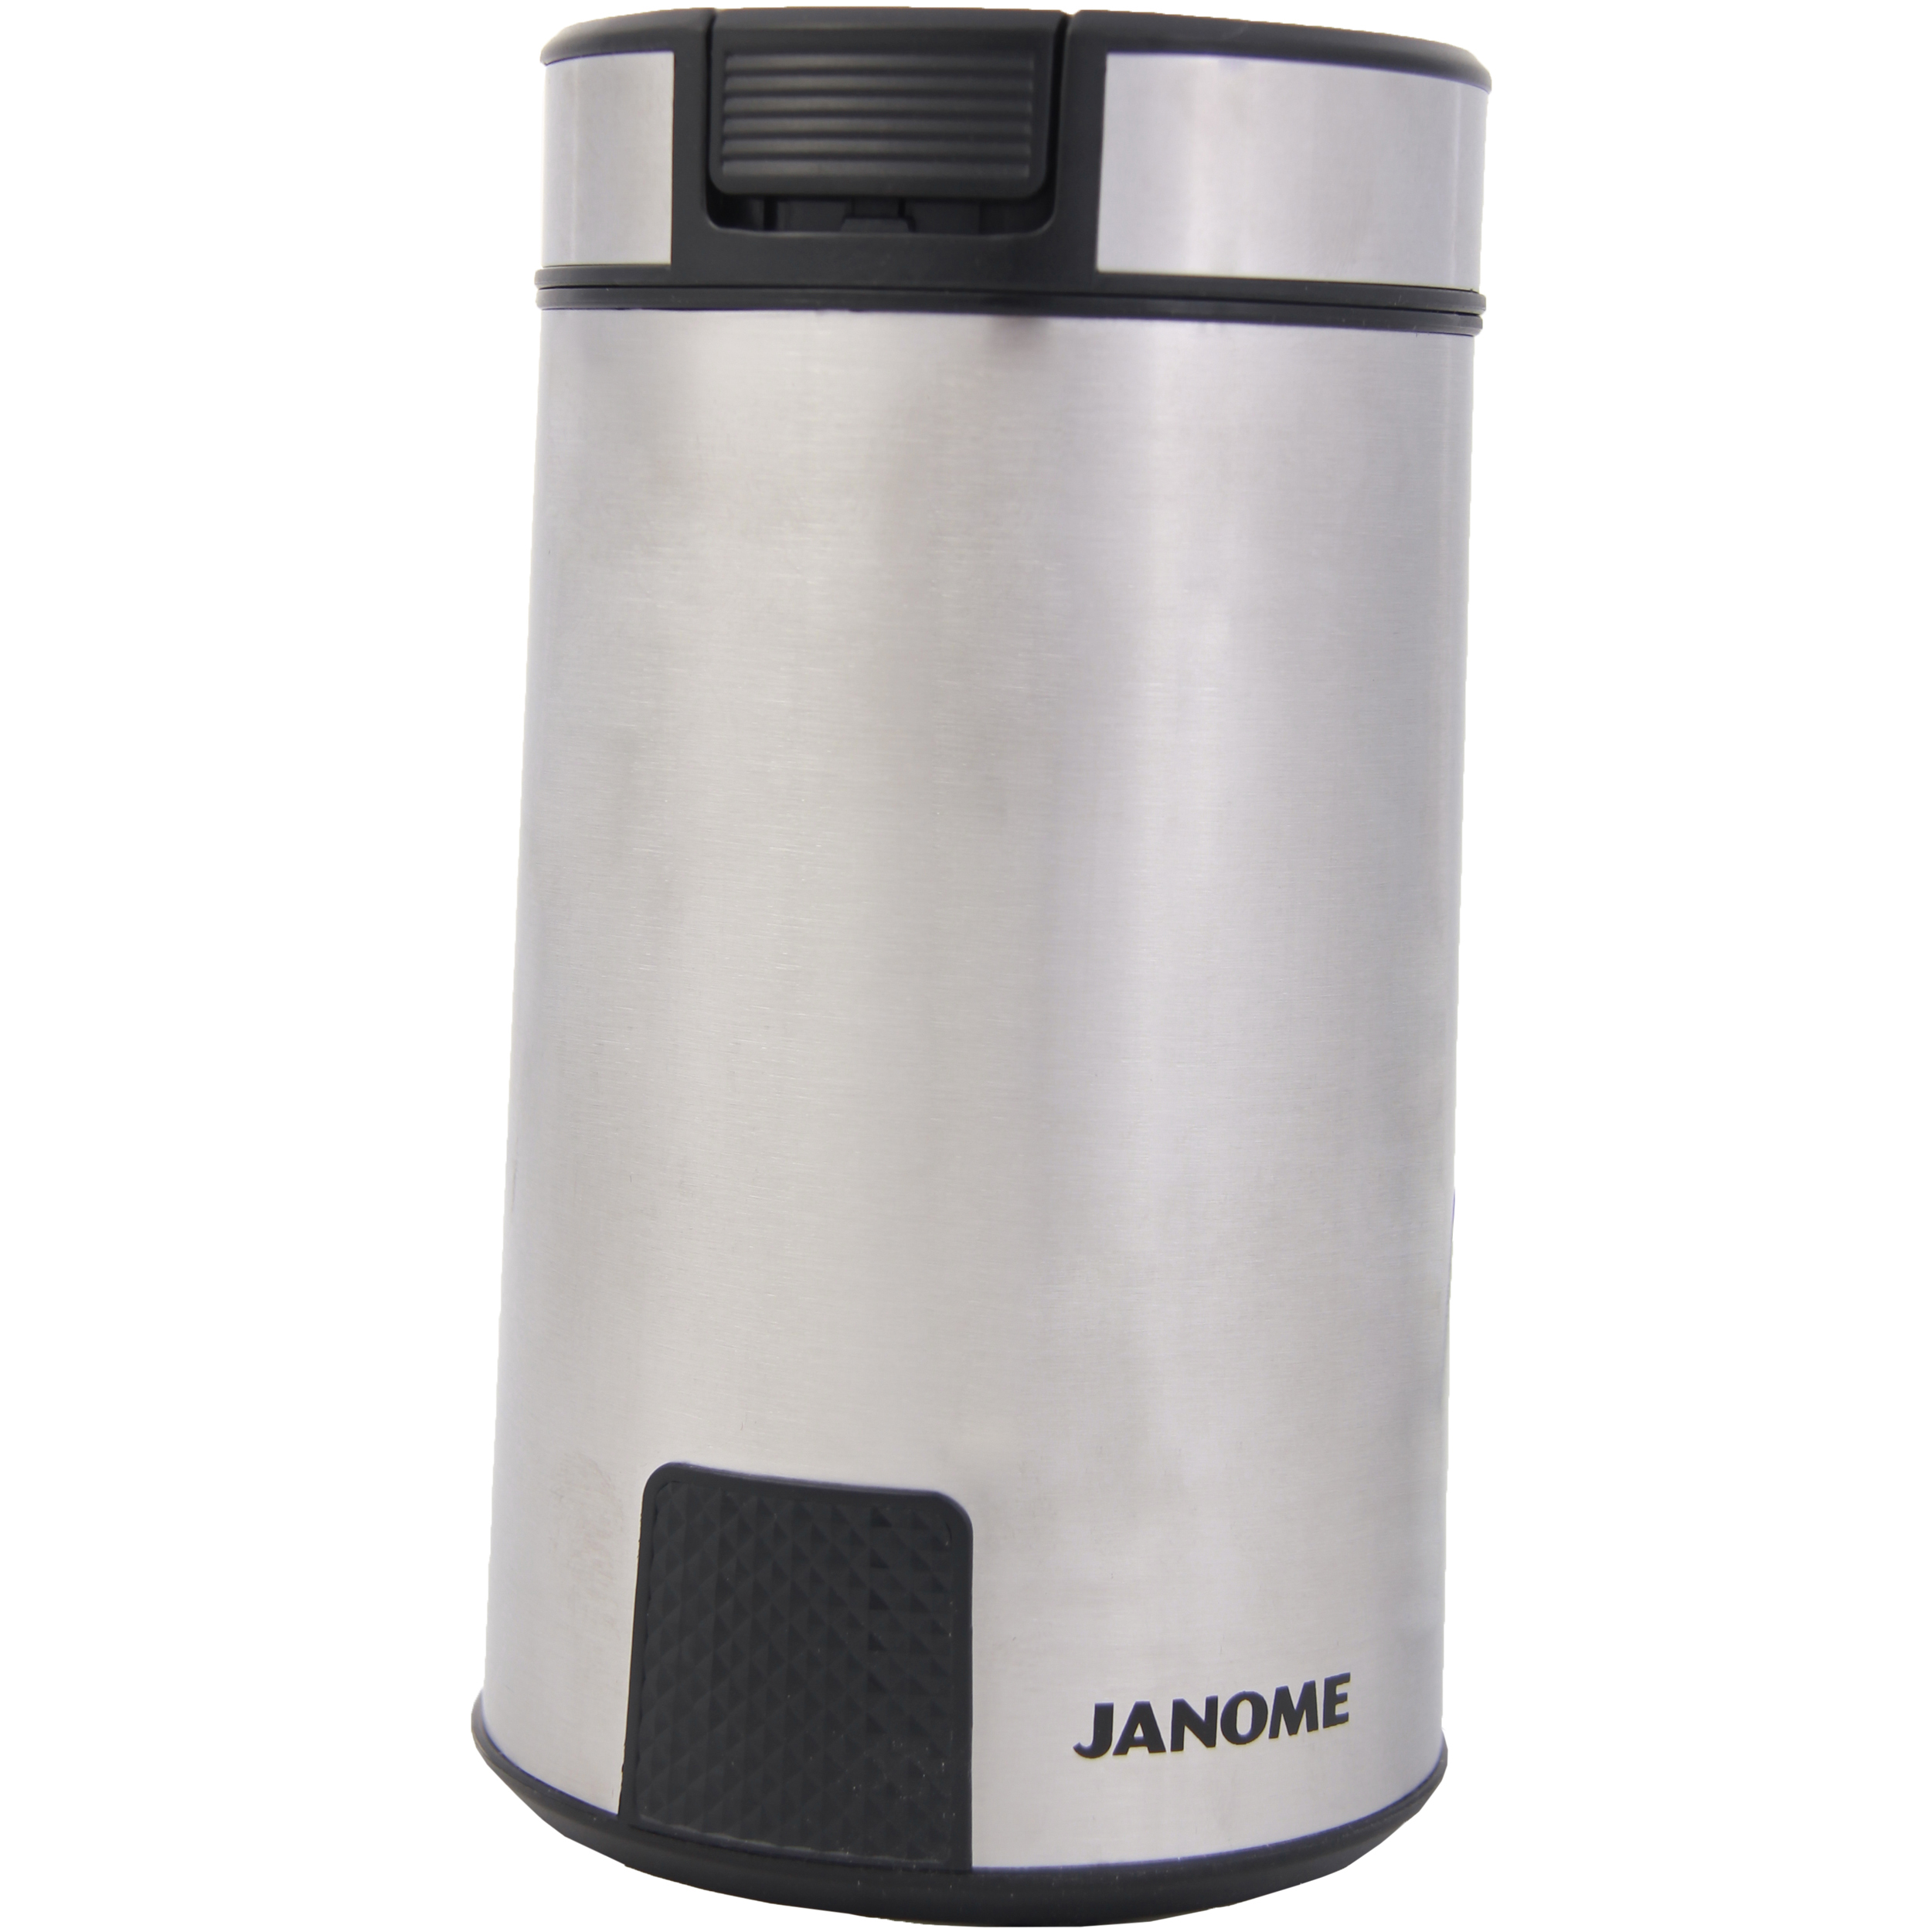 آسیاب قهوه ژانومه مدل JANOME JCG-7120